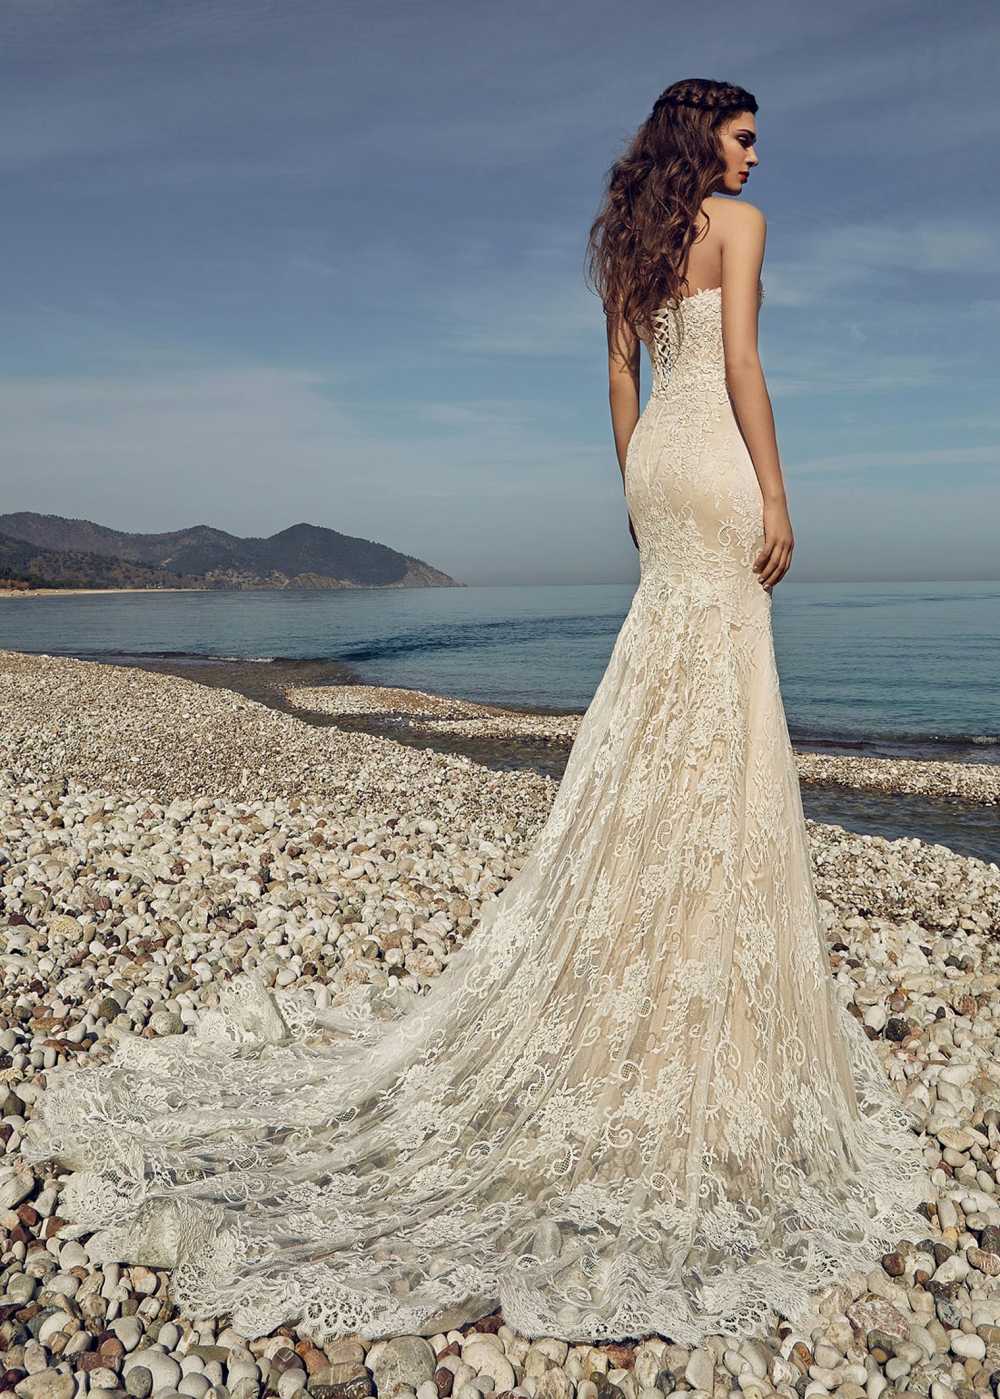 Самые красивые свадебные платья: роскошные фото каталог 2019 - модный журнал